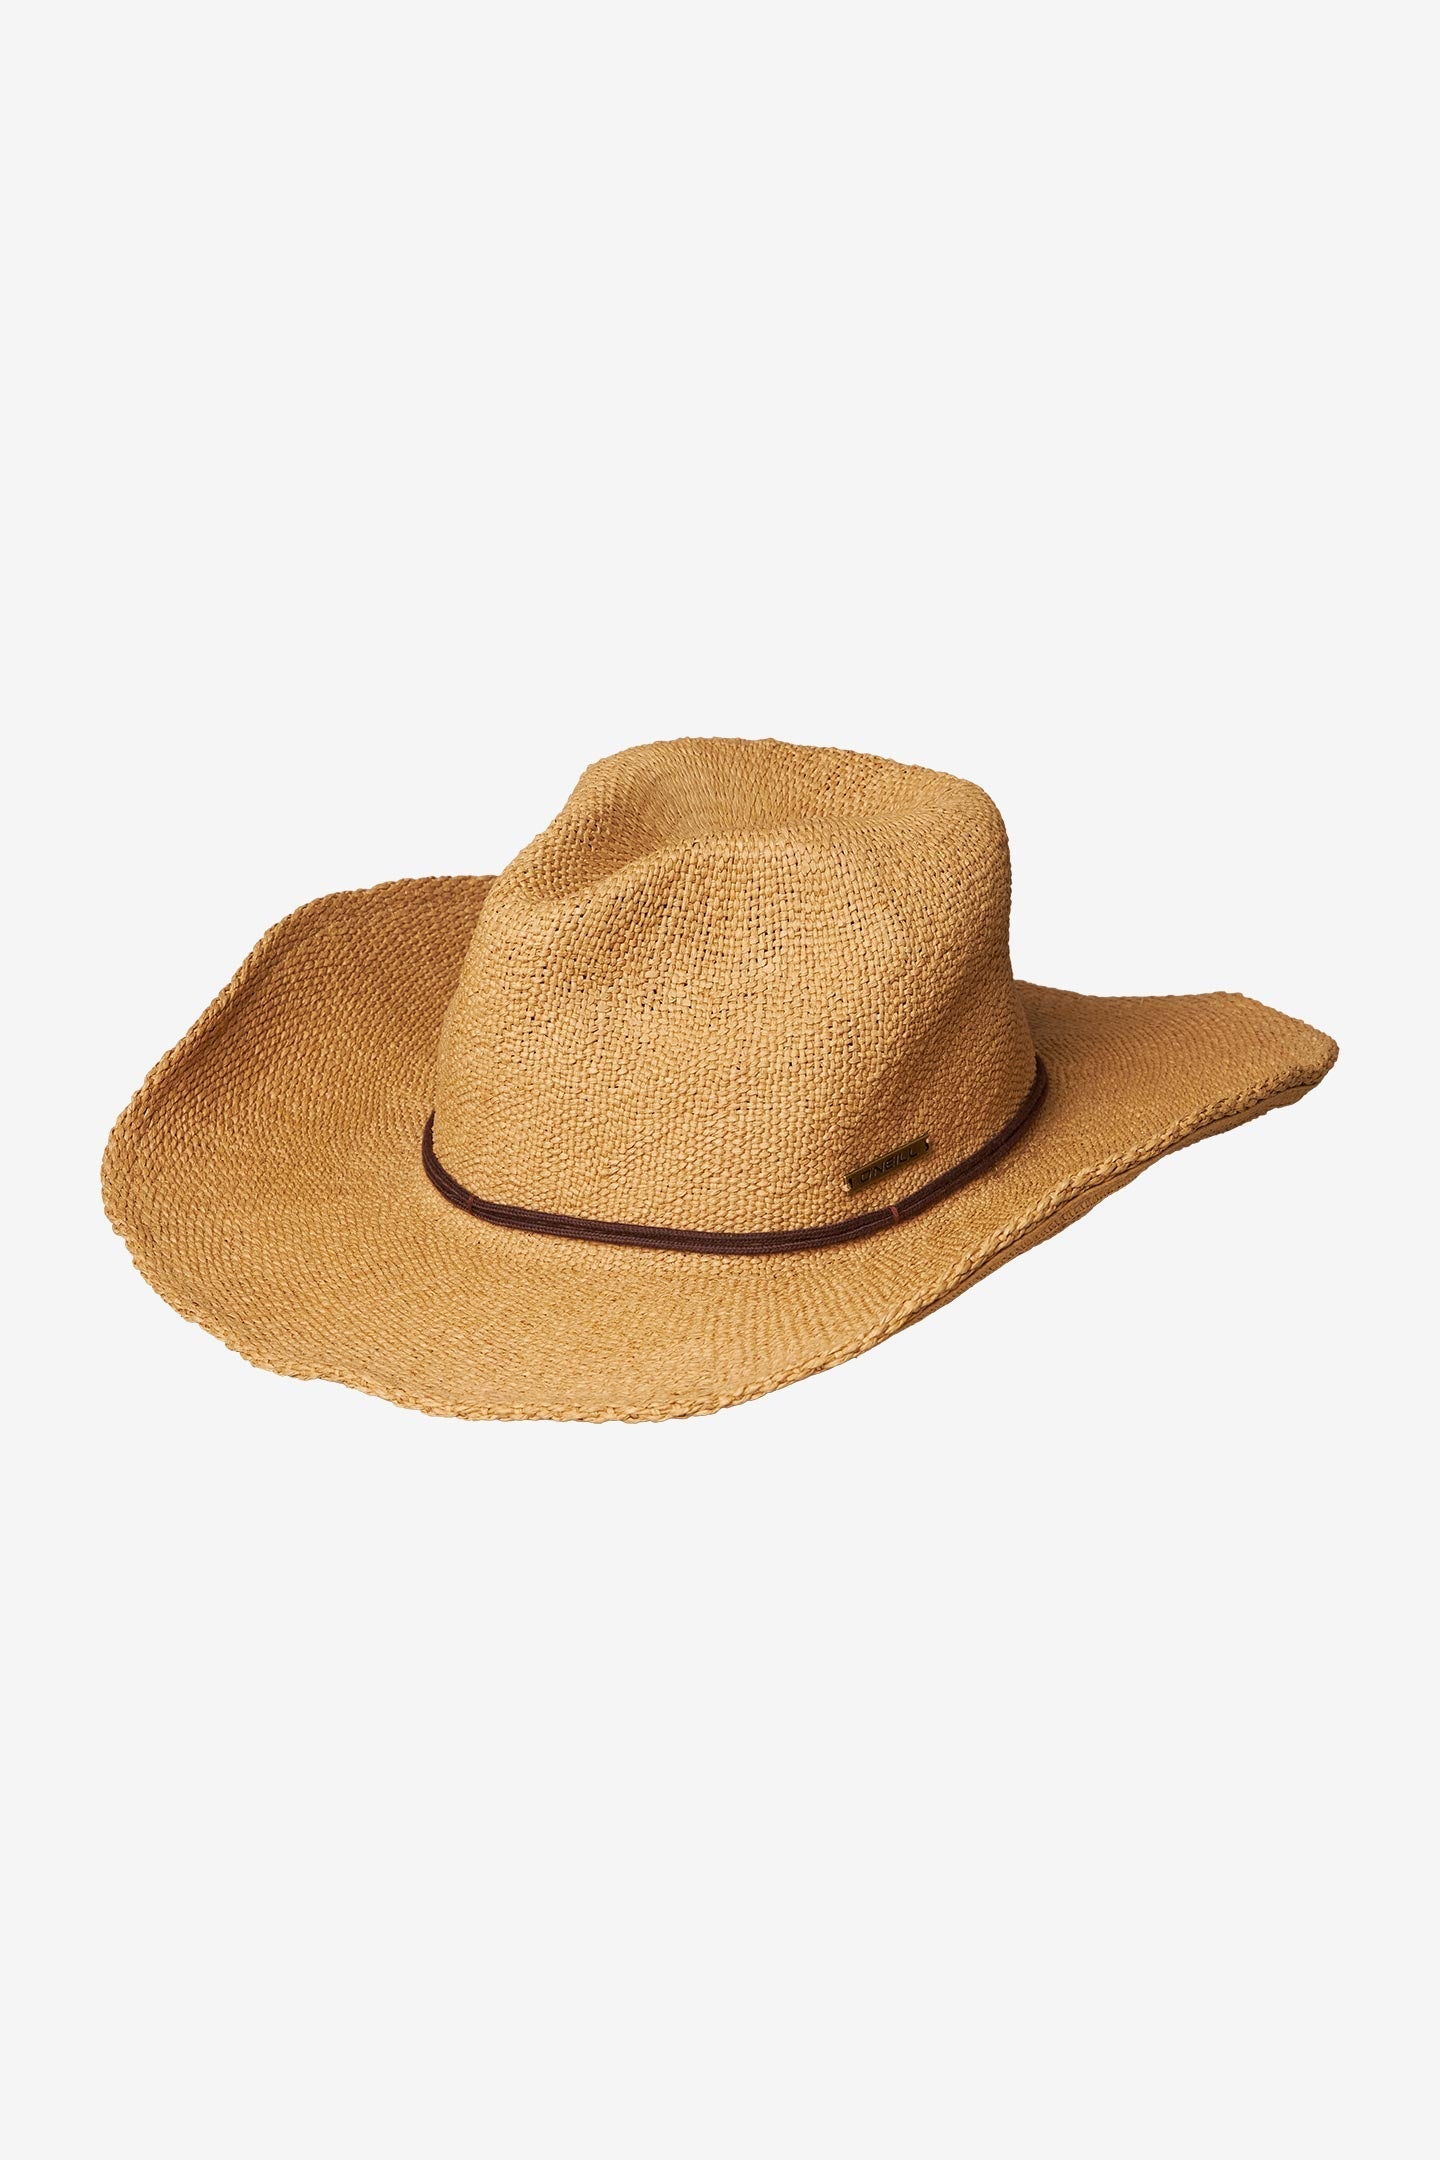 O'Neill Maya Sun Hat